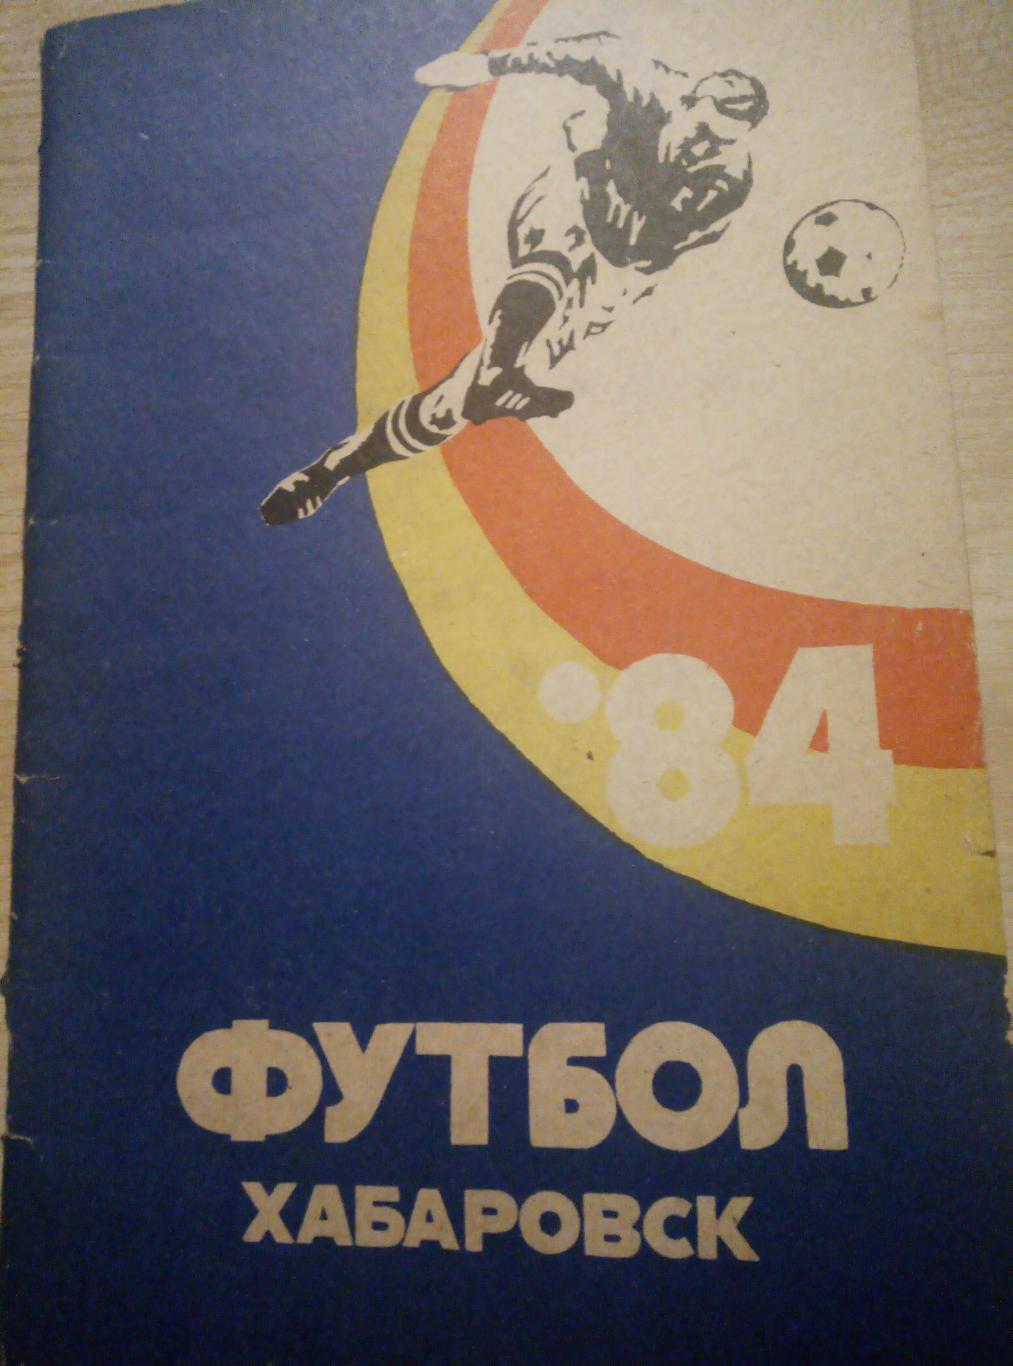 Календарь Справочник Хабаровск - 1984